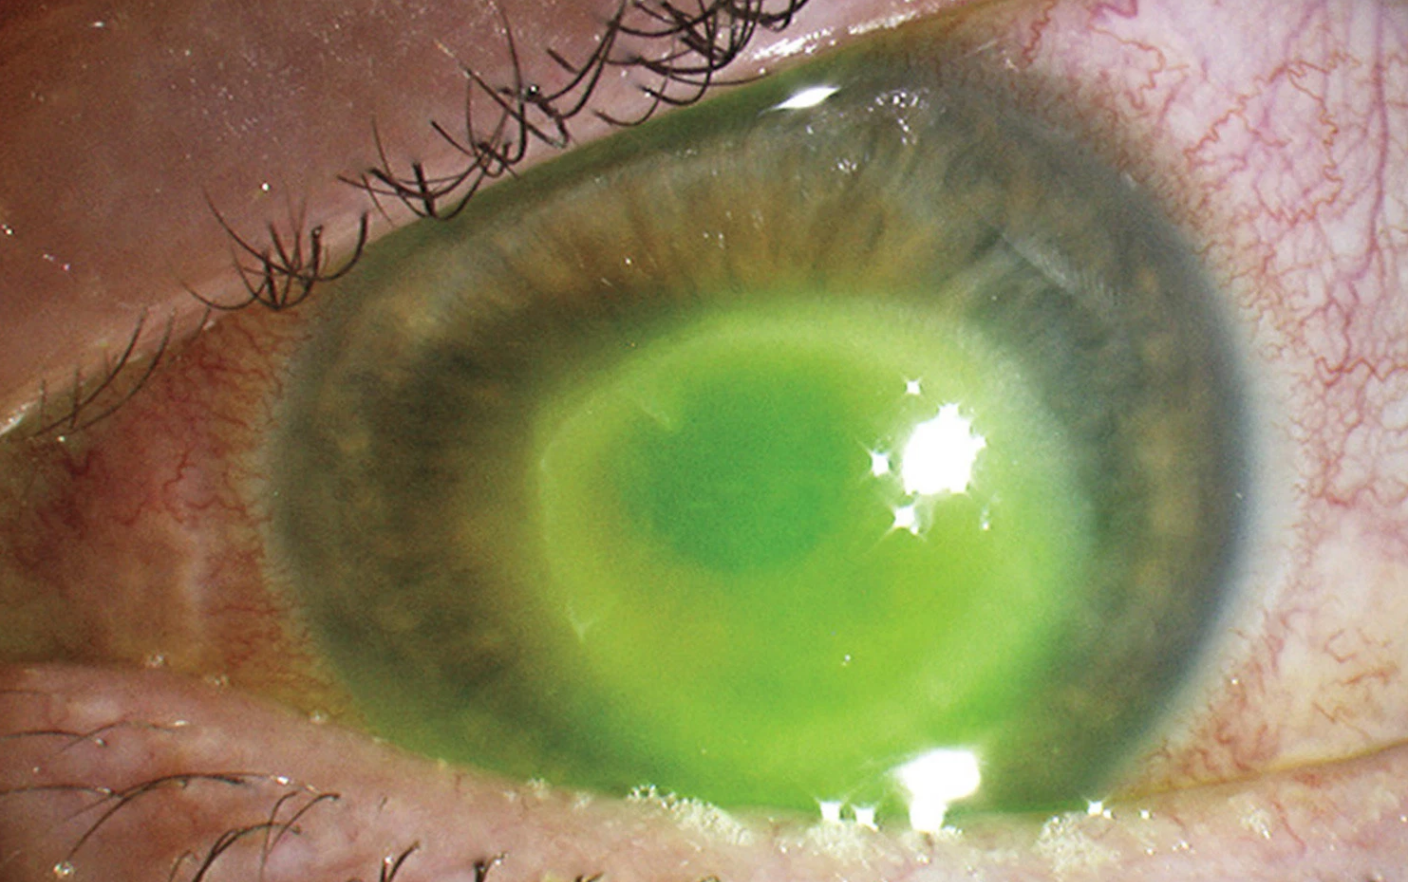 Tratamentul paraziților oculari la om. Descărcarea albă în semnele oculare ale helminților